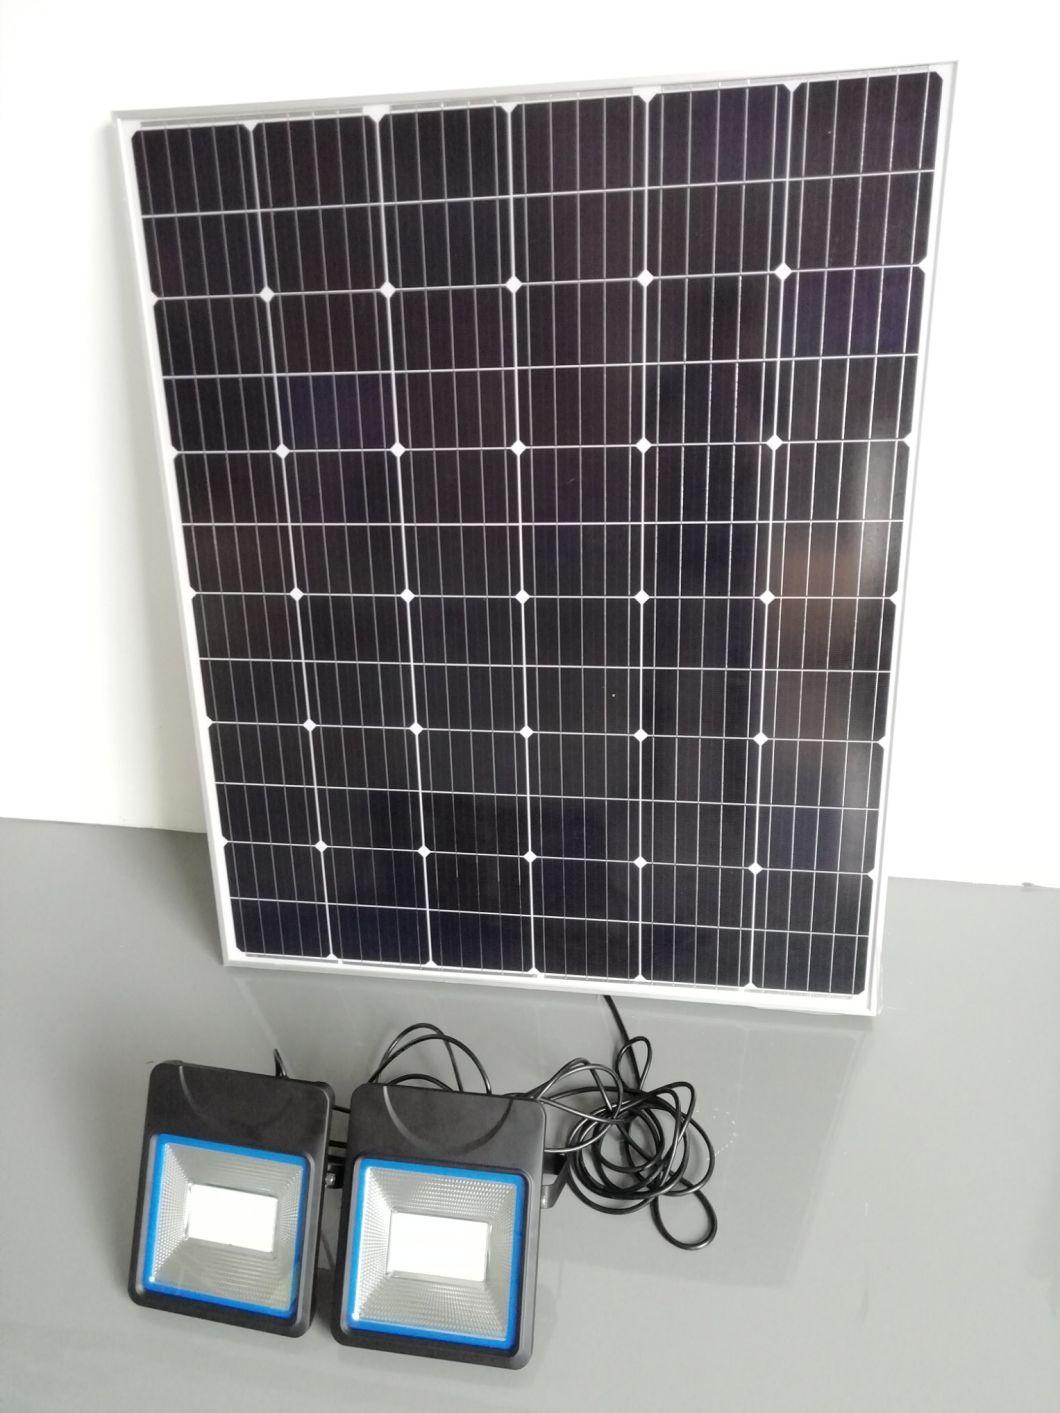 Esavior 5 Years Warranty 100W All in Two LED Solar Flood Lighting